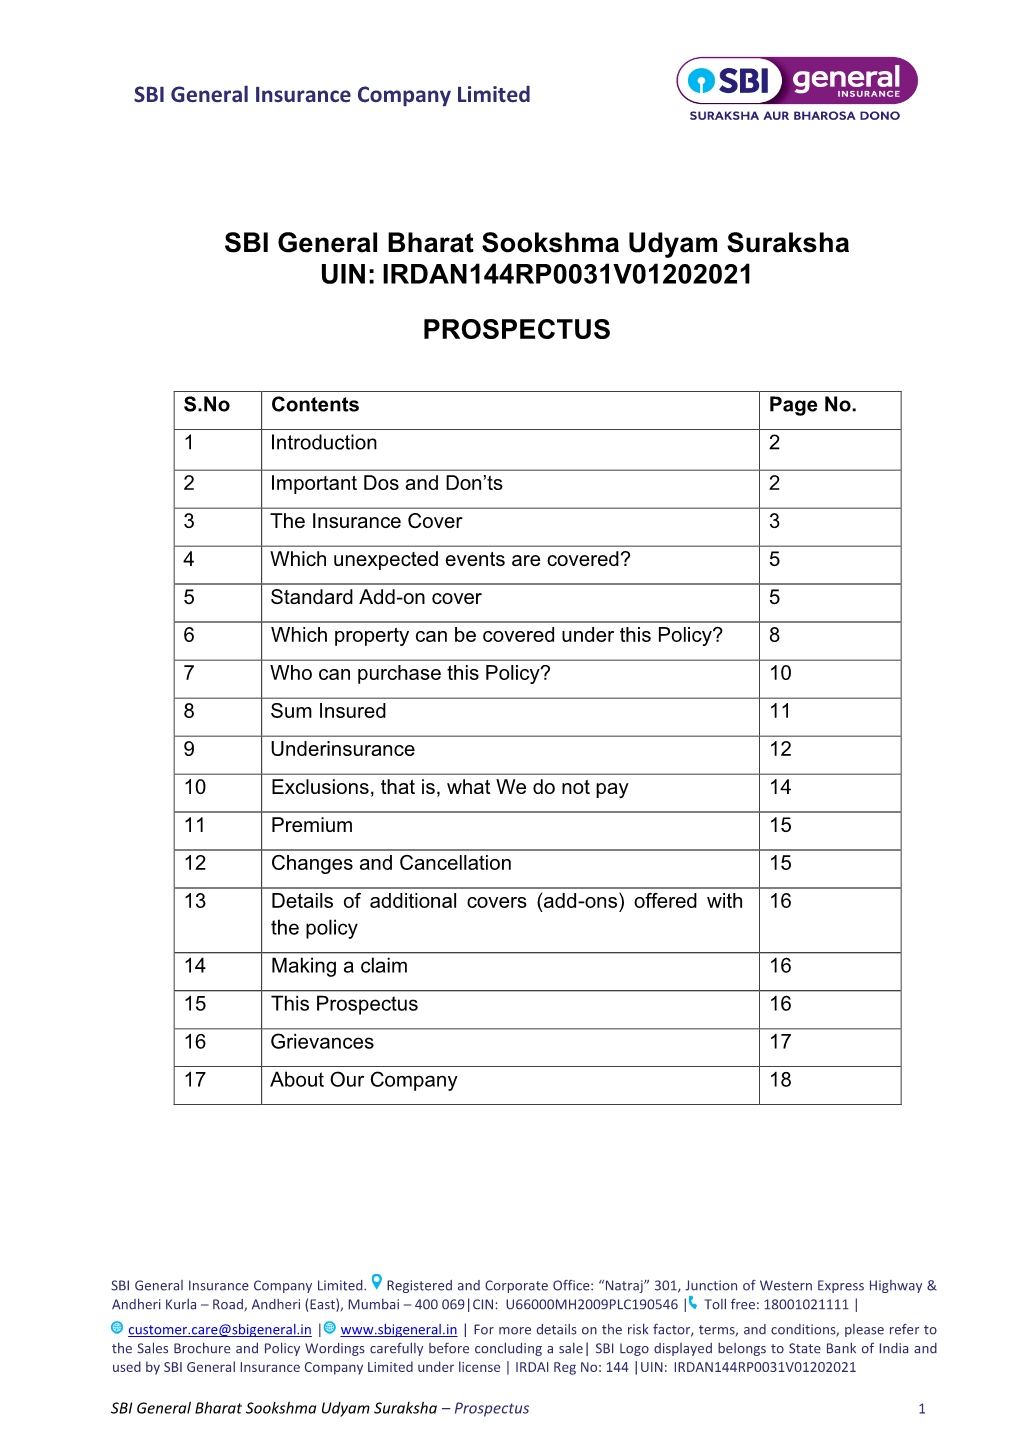 SBI General Bharat Sookshma Udyam Suraksha UIN: IRDAN144RP0031V01202021